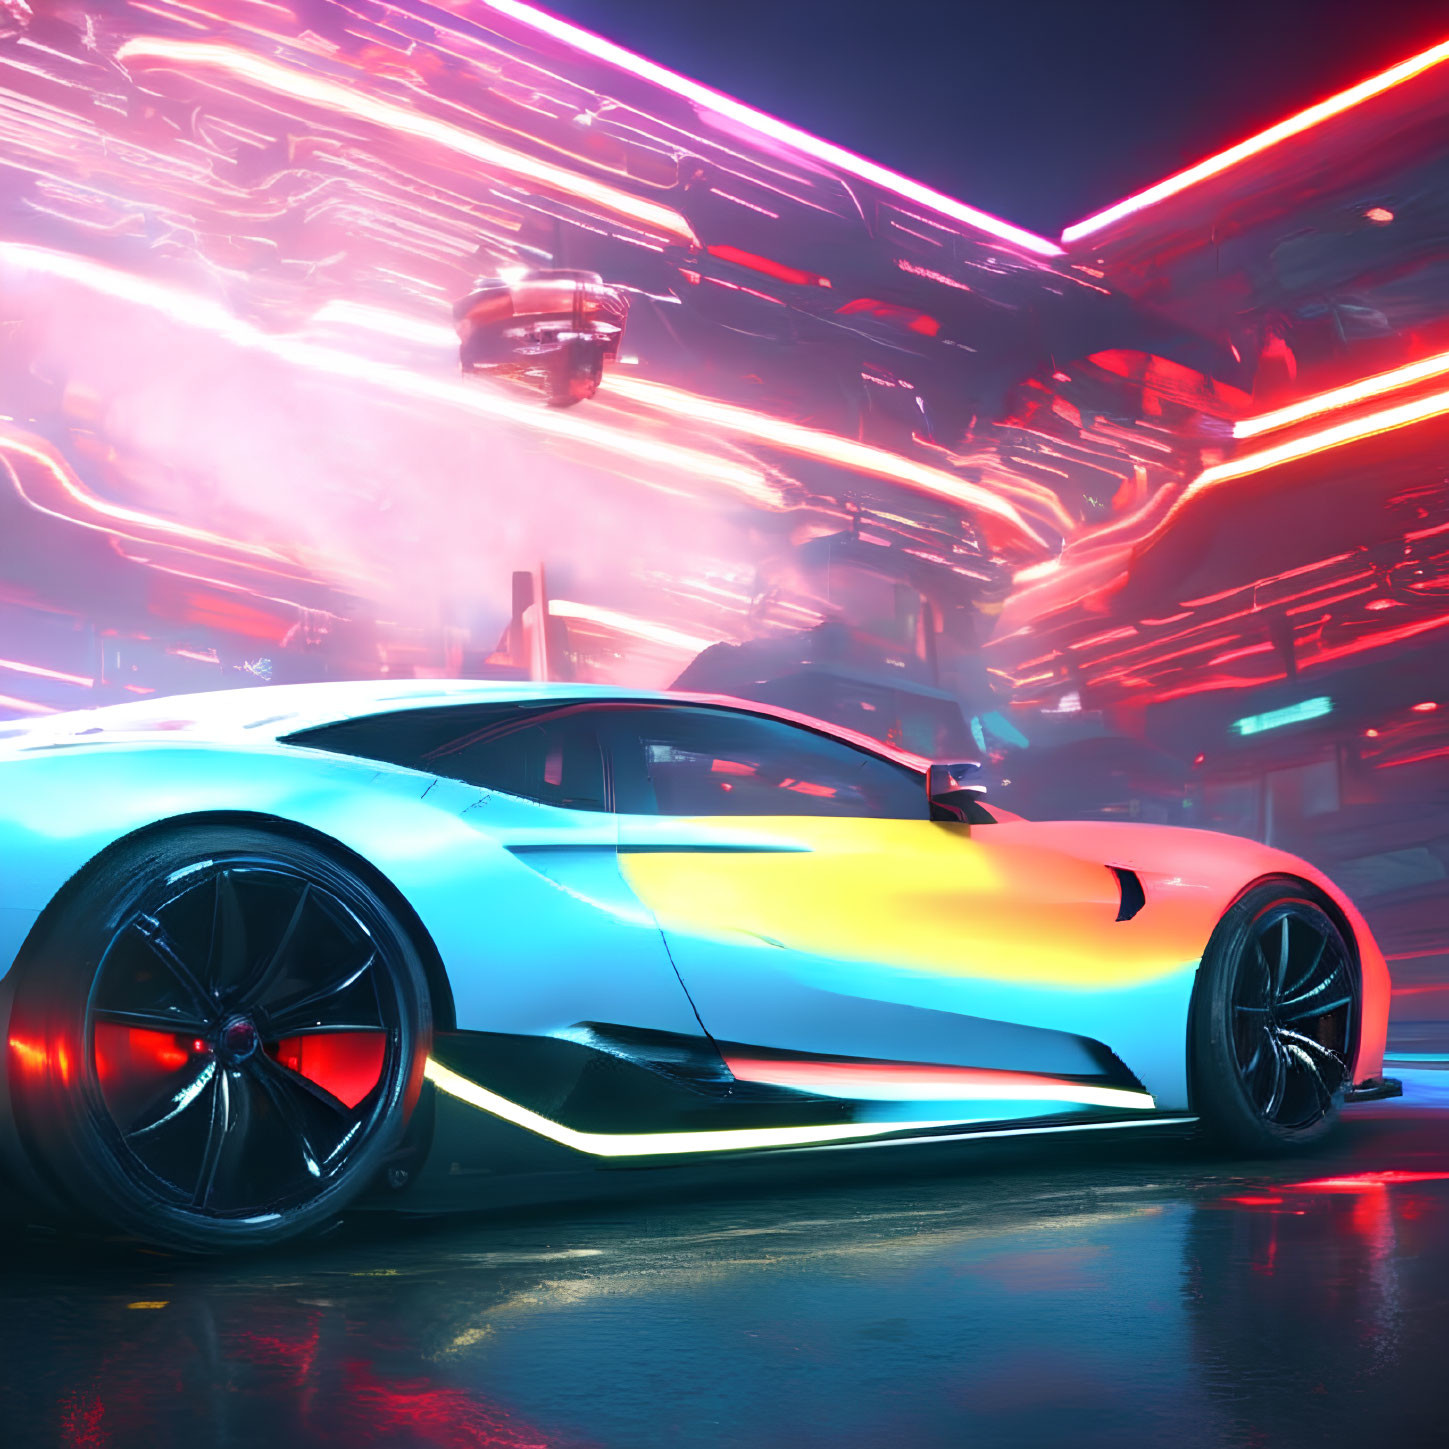 Futuristic car with neon underglow in vibrant cityscape